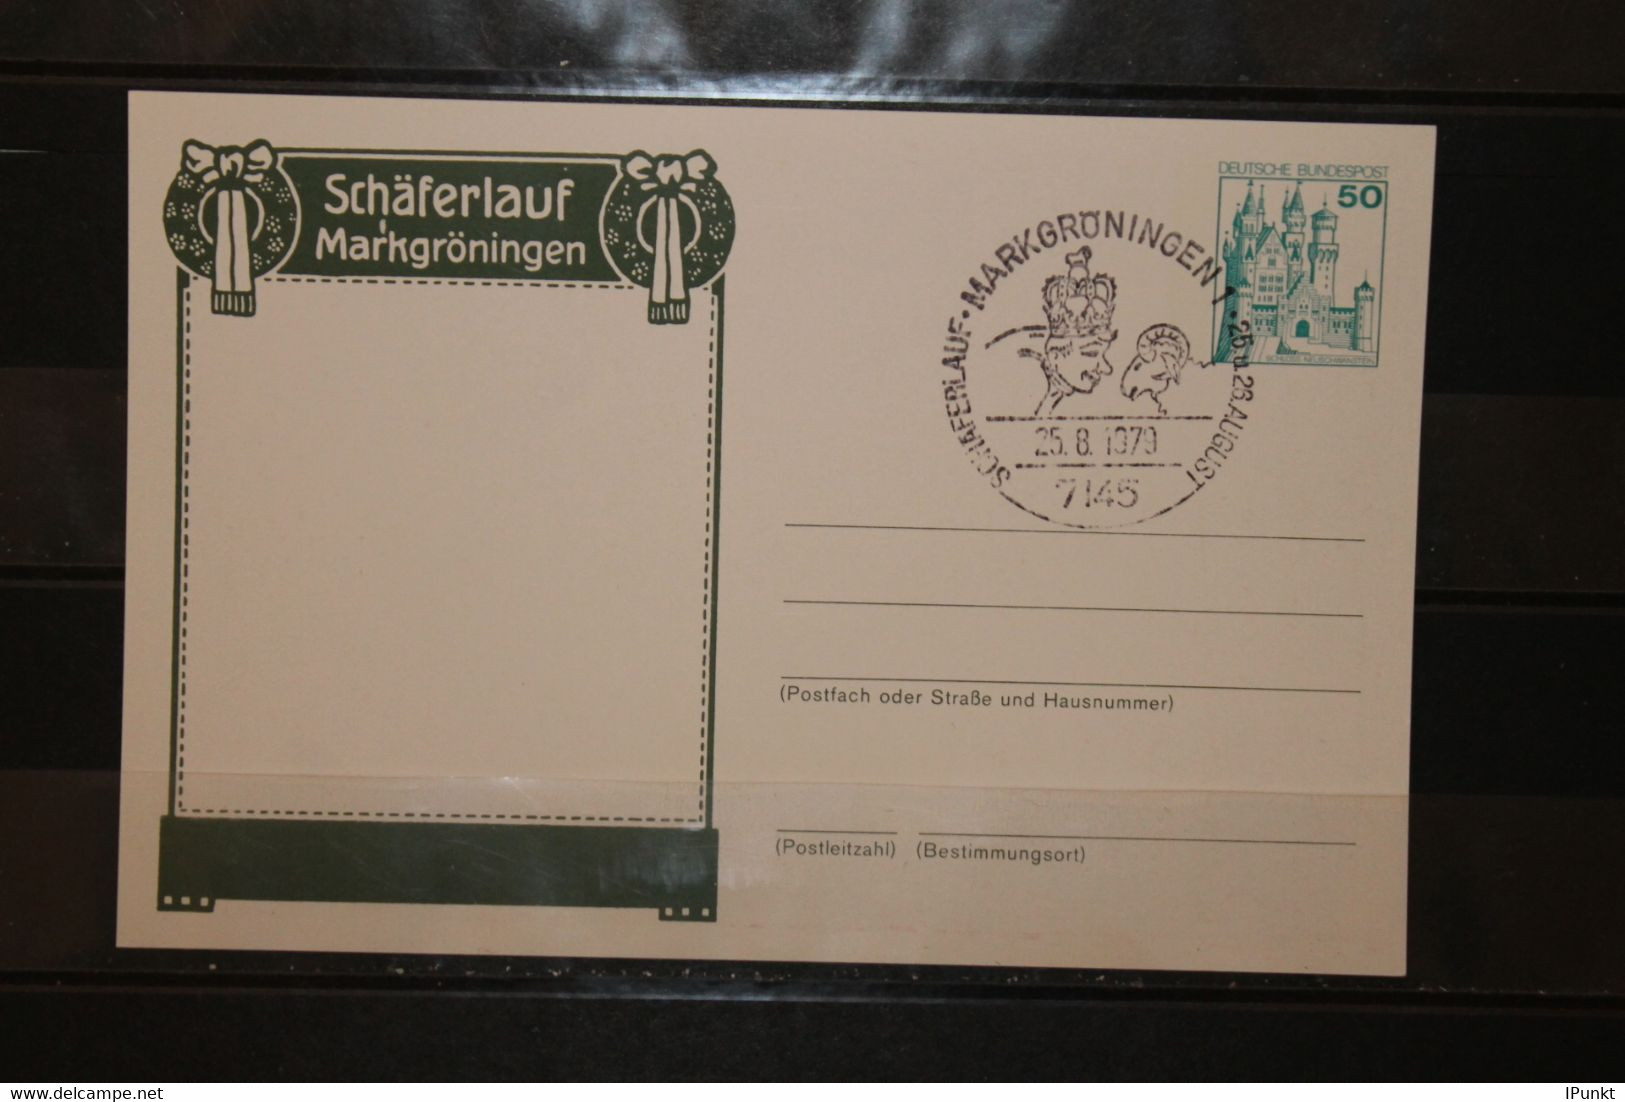 Deutschland, Schäferlauf Markgröningen 1979, SST Markgröningen - Private Postcards - Used